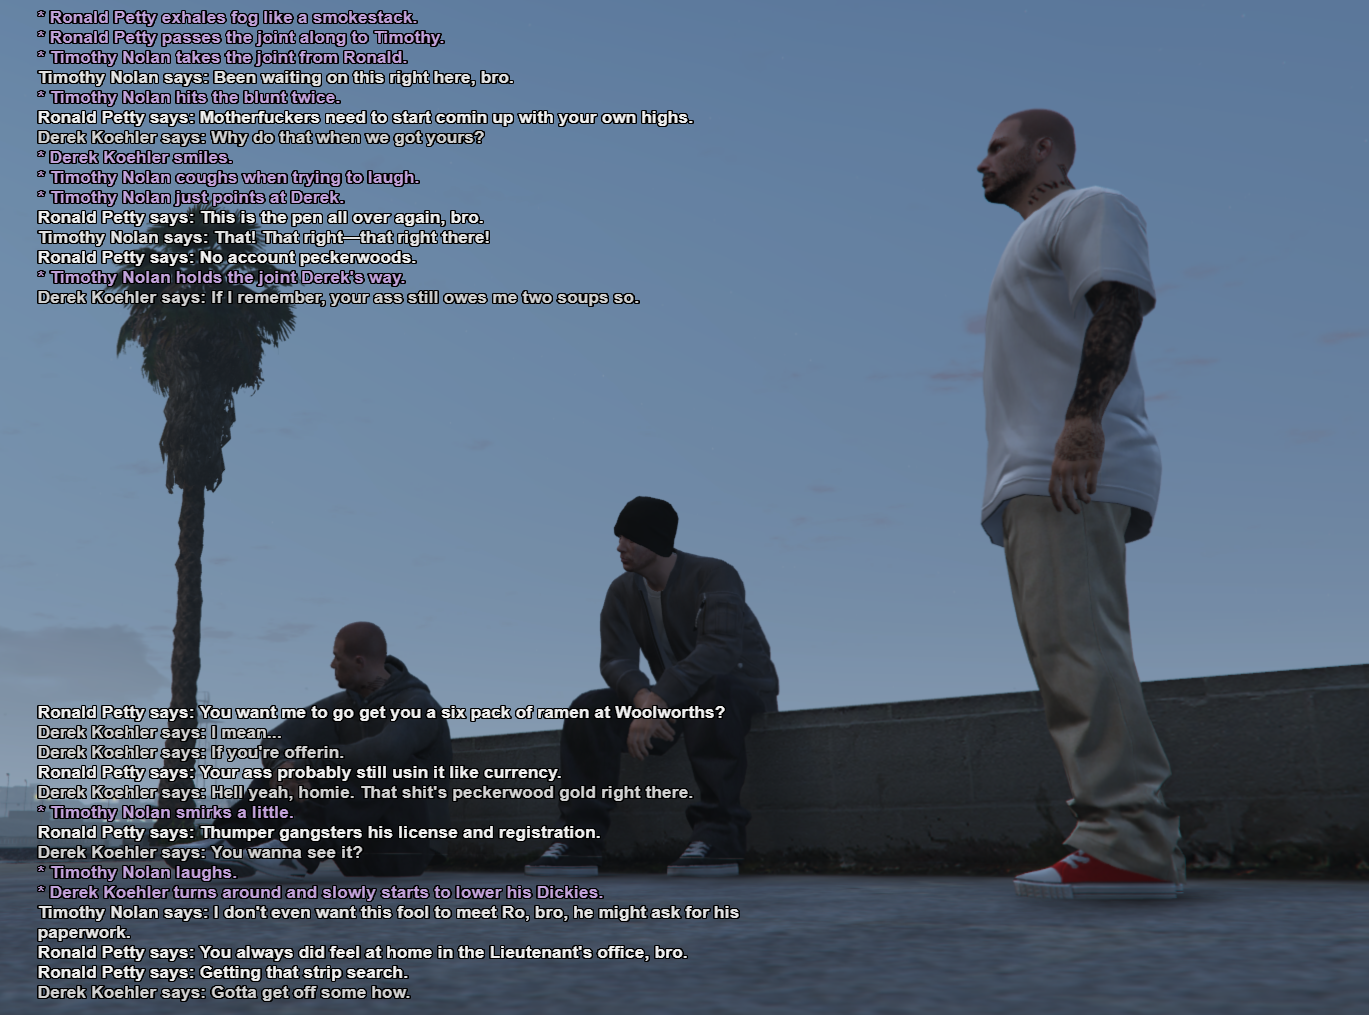 Grand_Theft_Auto_V_Screenshot_2020.01.11_-_16.43.02_copy.png